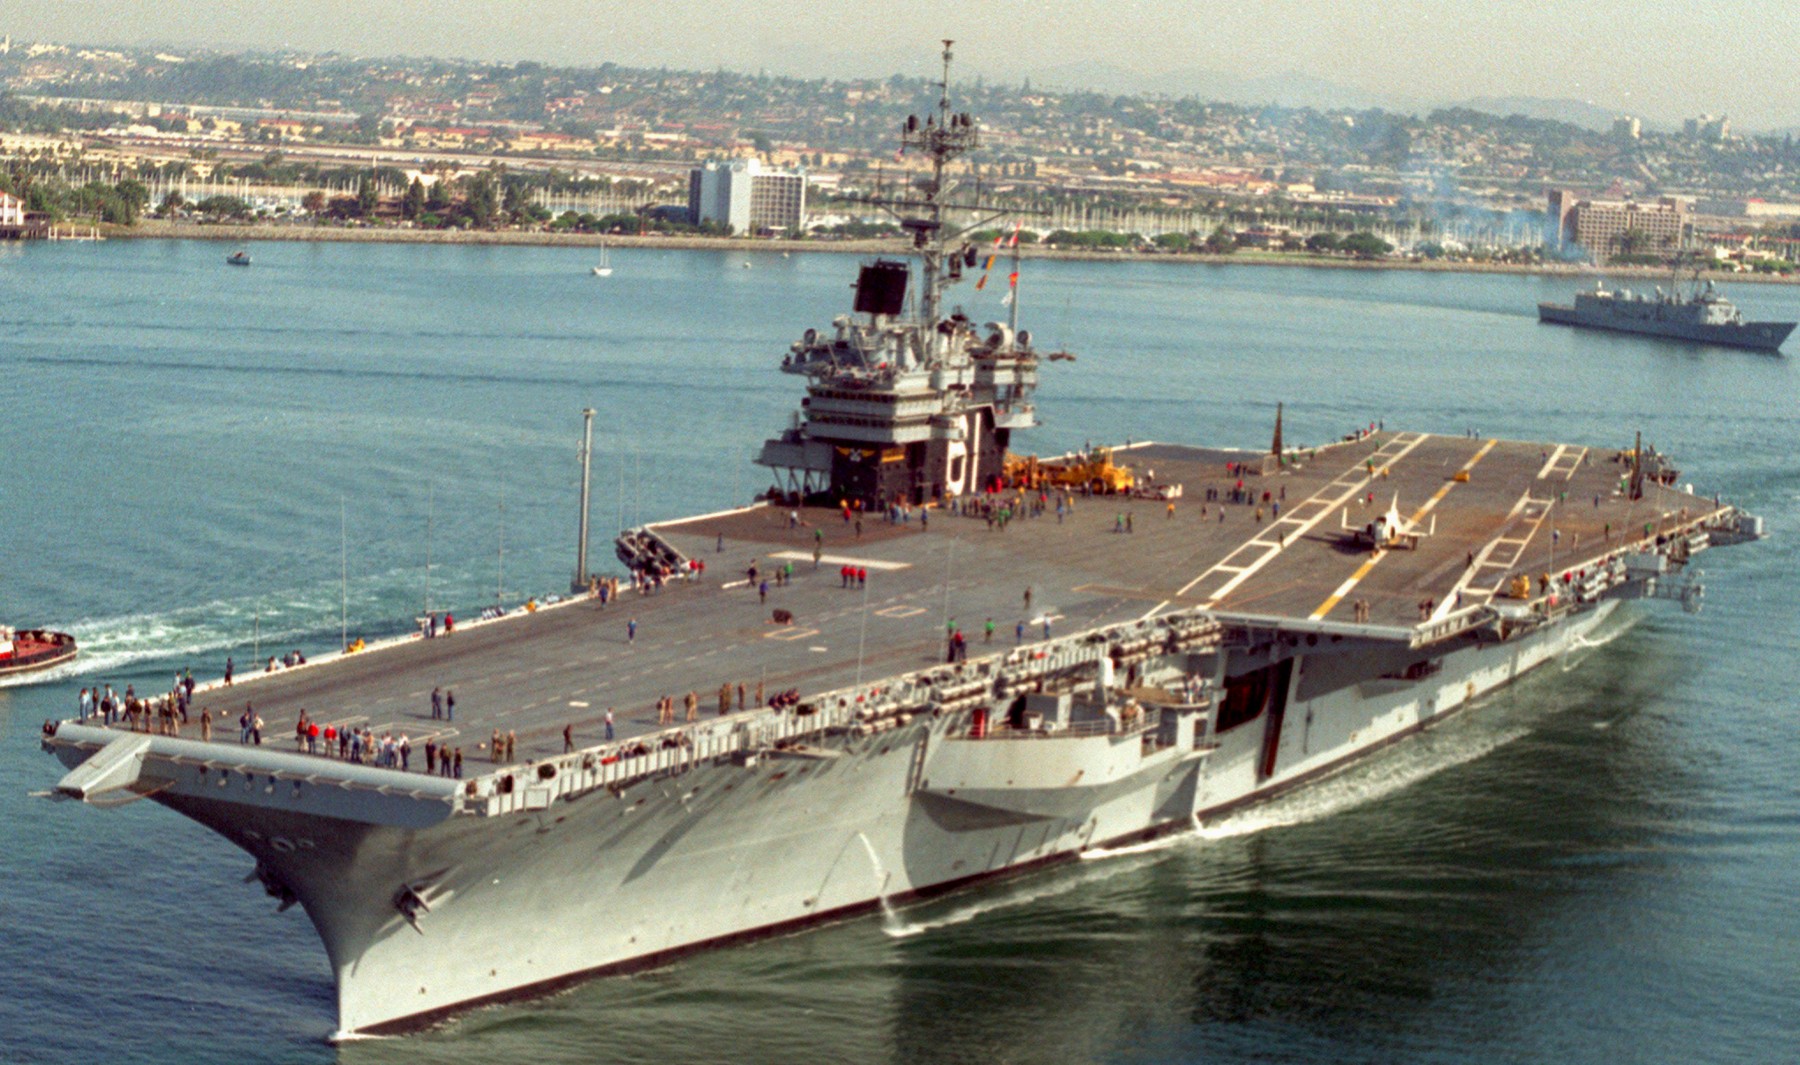 cv-61 uss ranger forrestal class aircraft carrier us navy 96